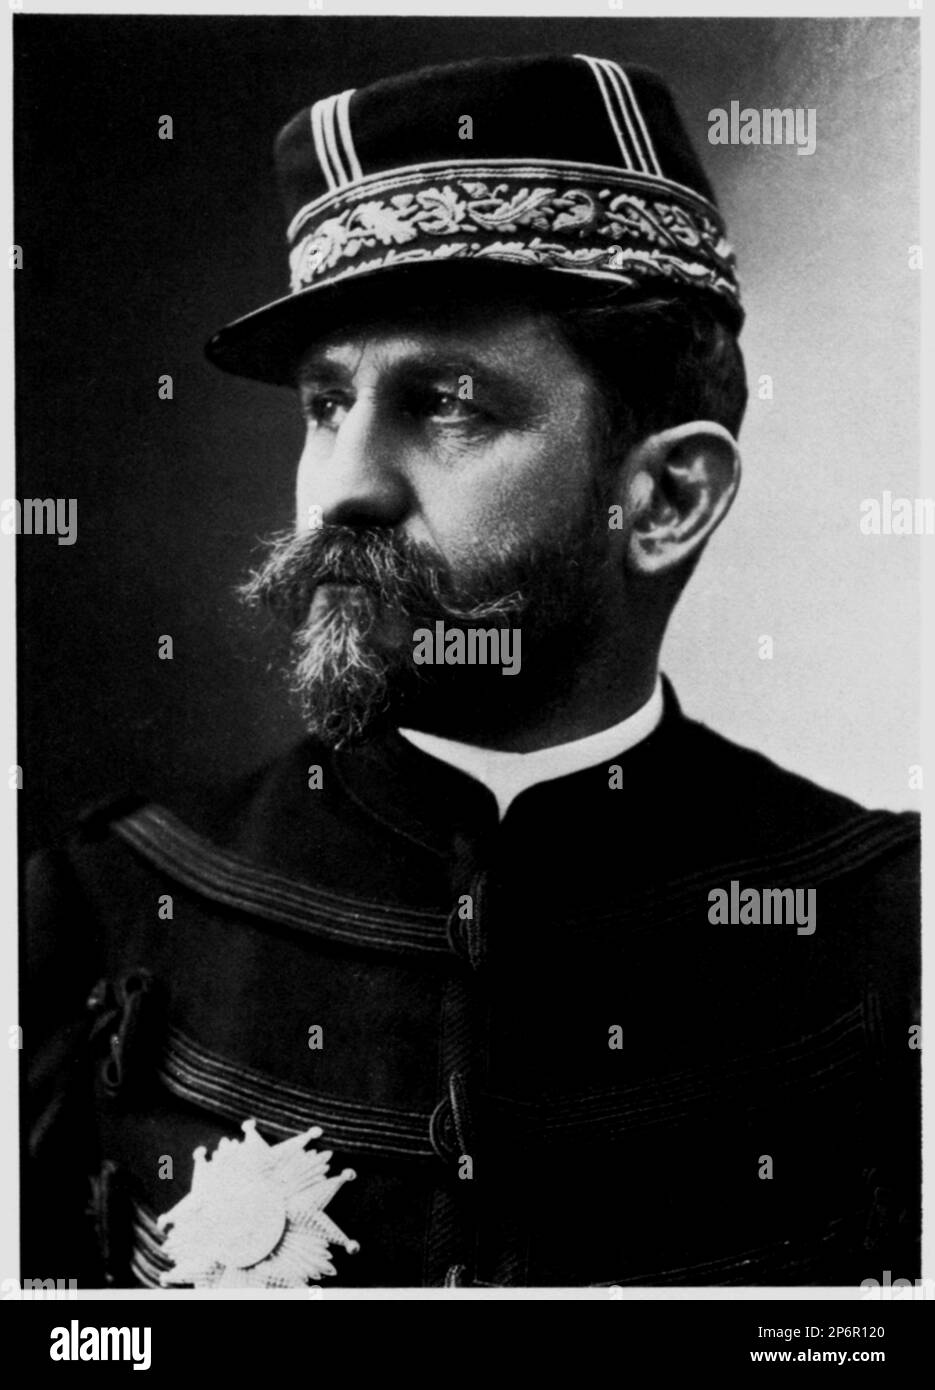 1880 c, FRANKREICH : GEORGES BOULANGER ( 1837 - 1891) war ein französischer General und reaktionärer Politiker . Foto von NADAR , Paris , Frankreich - POLITICA - POLITIC - foto Storiche - foto storica - Portrait - Rituto - Bart - barba - Militäruniform - Divisa - uniforme militare - Baffi - Schnurrbart - Generale - Hut - cappello ---- Archivio GBB Stockfoto